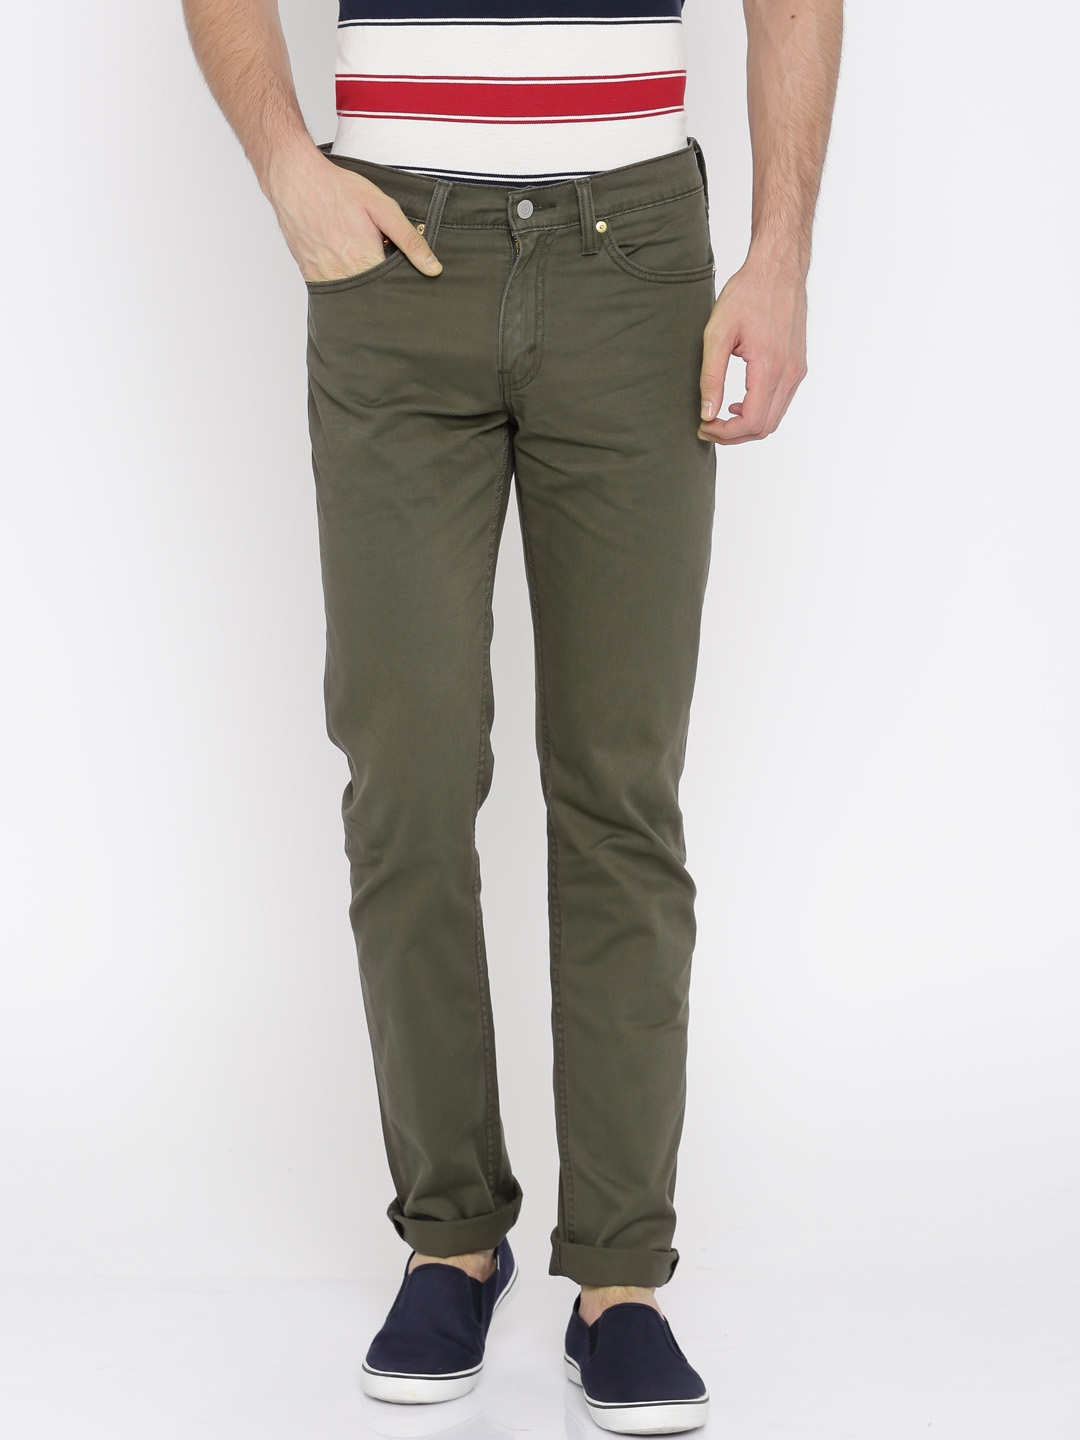 Introducir 54+ imagen men’s levi’s olive jeans